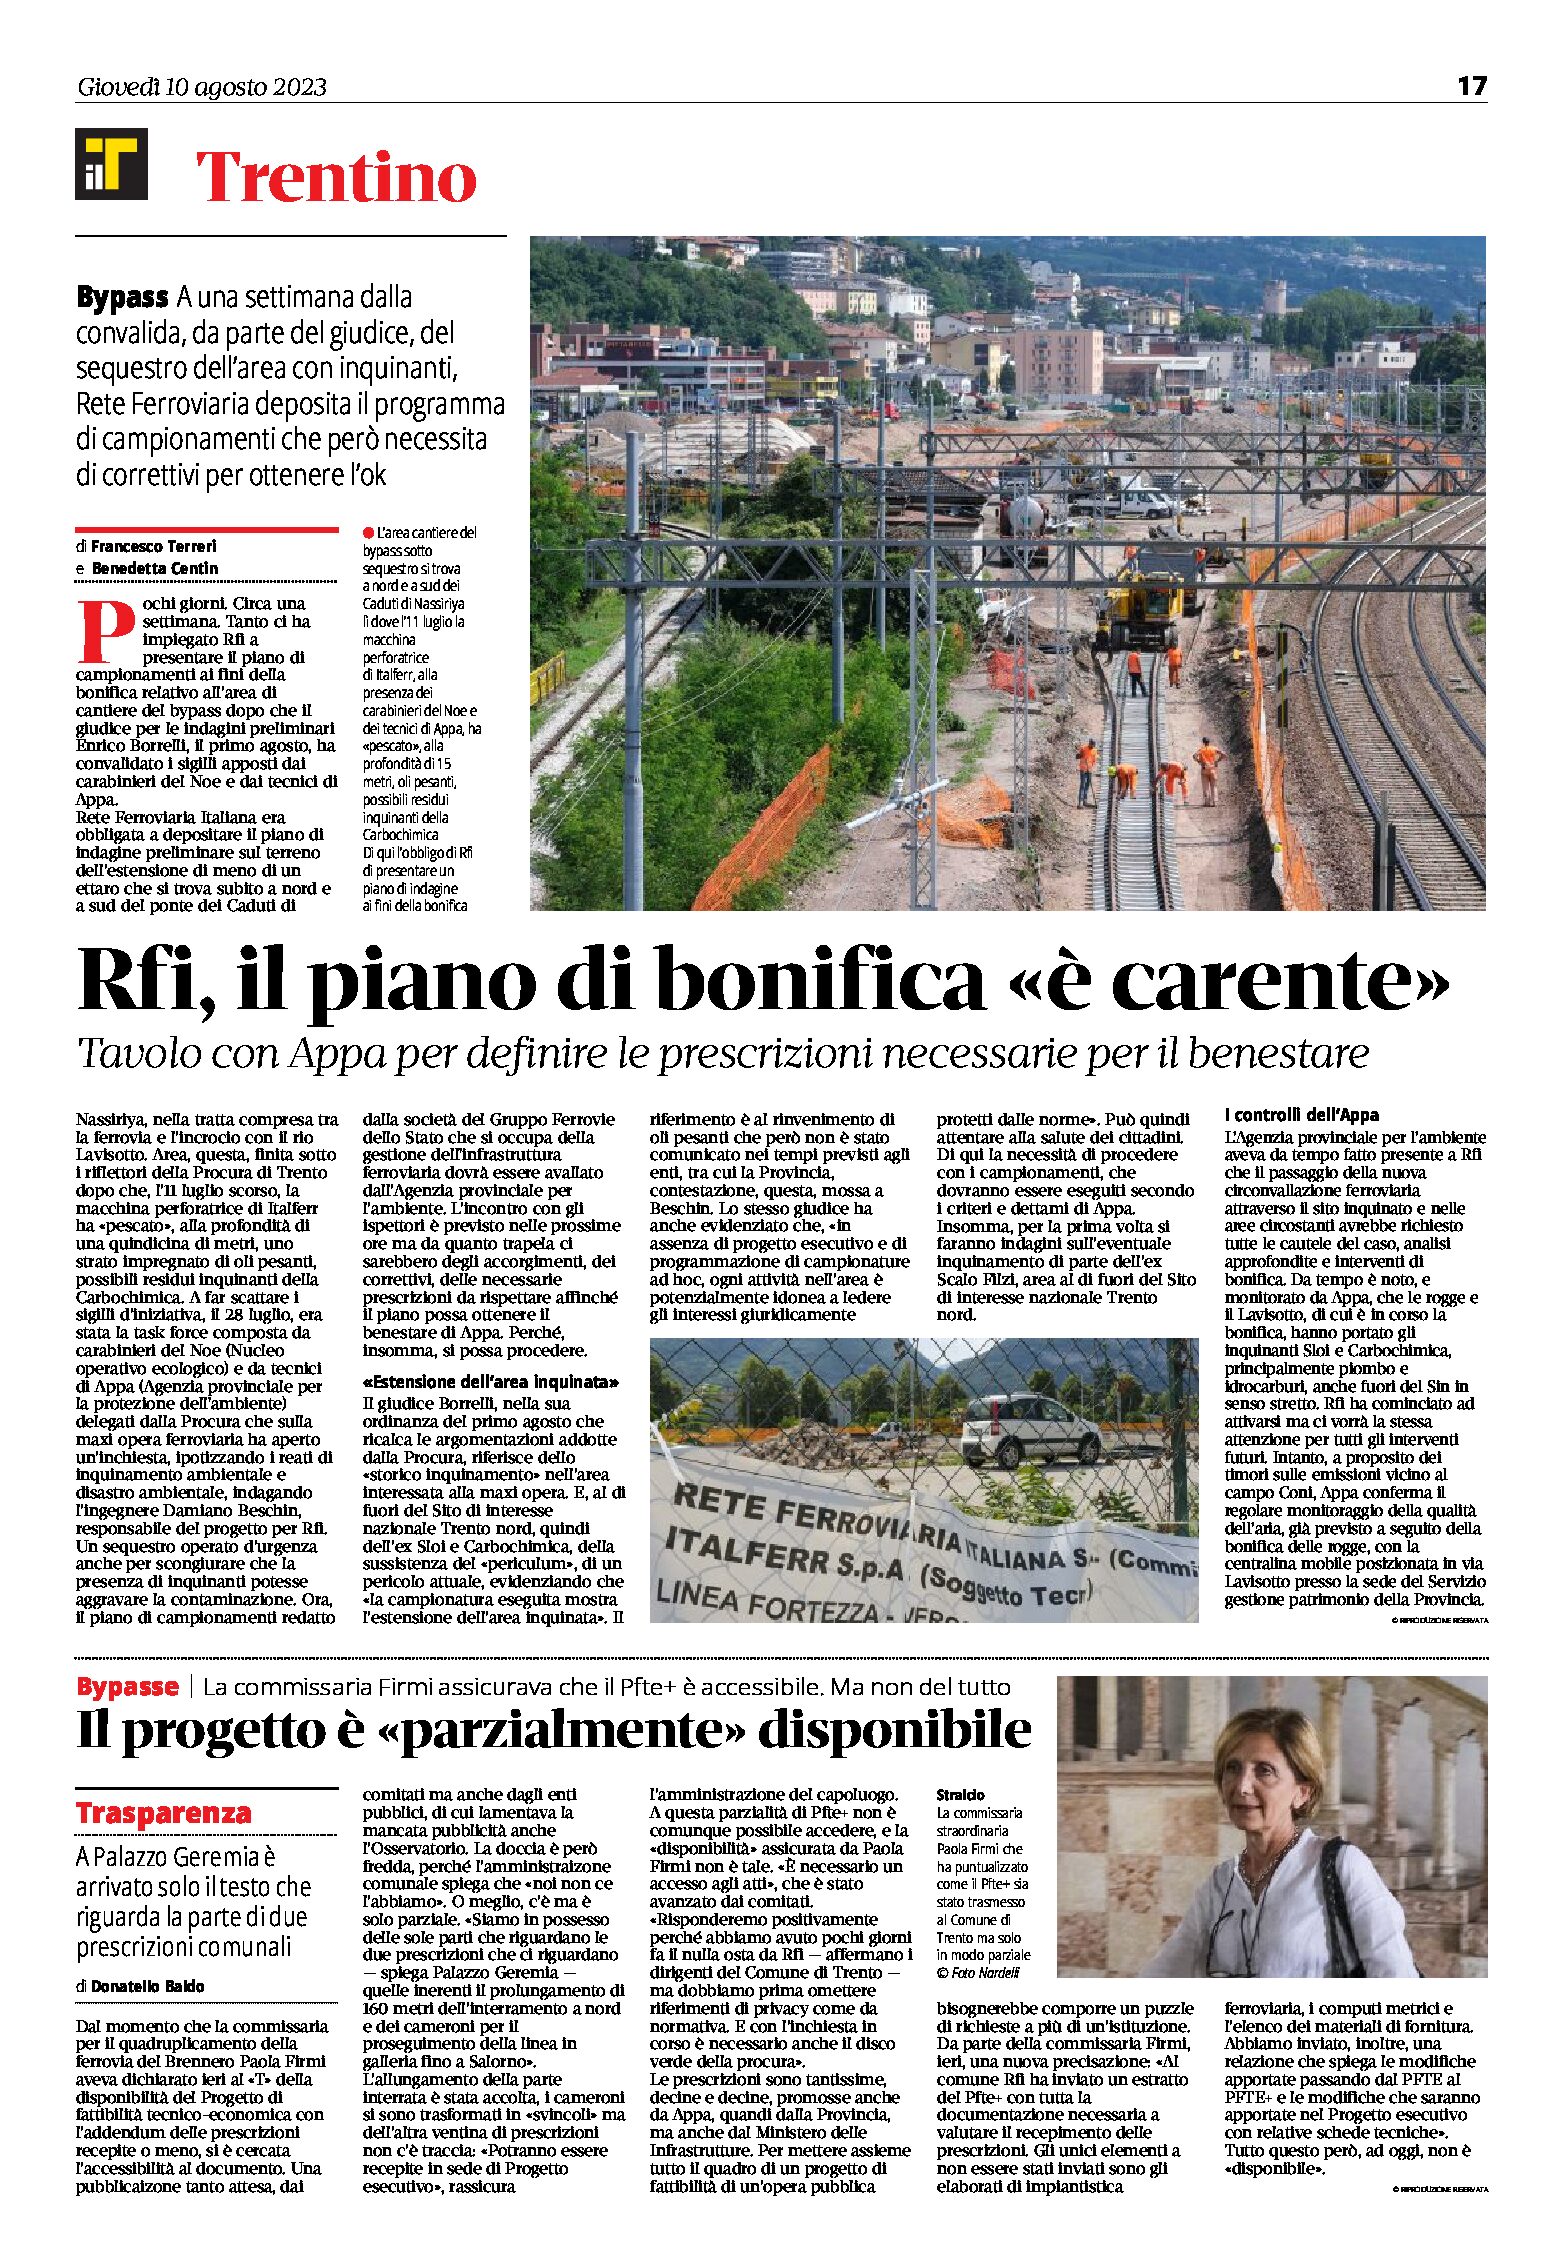 Trento, bypass: Rfi, il piano di bonifica “è carente”